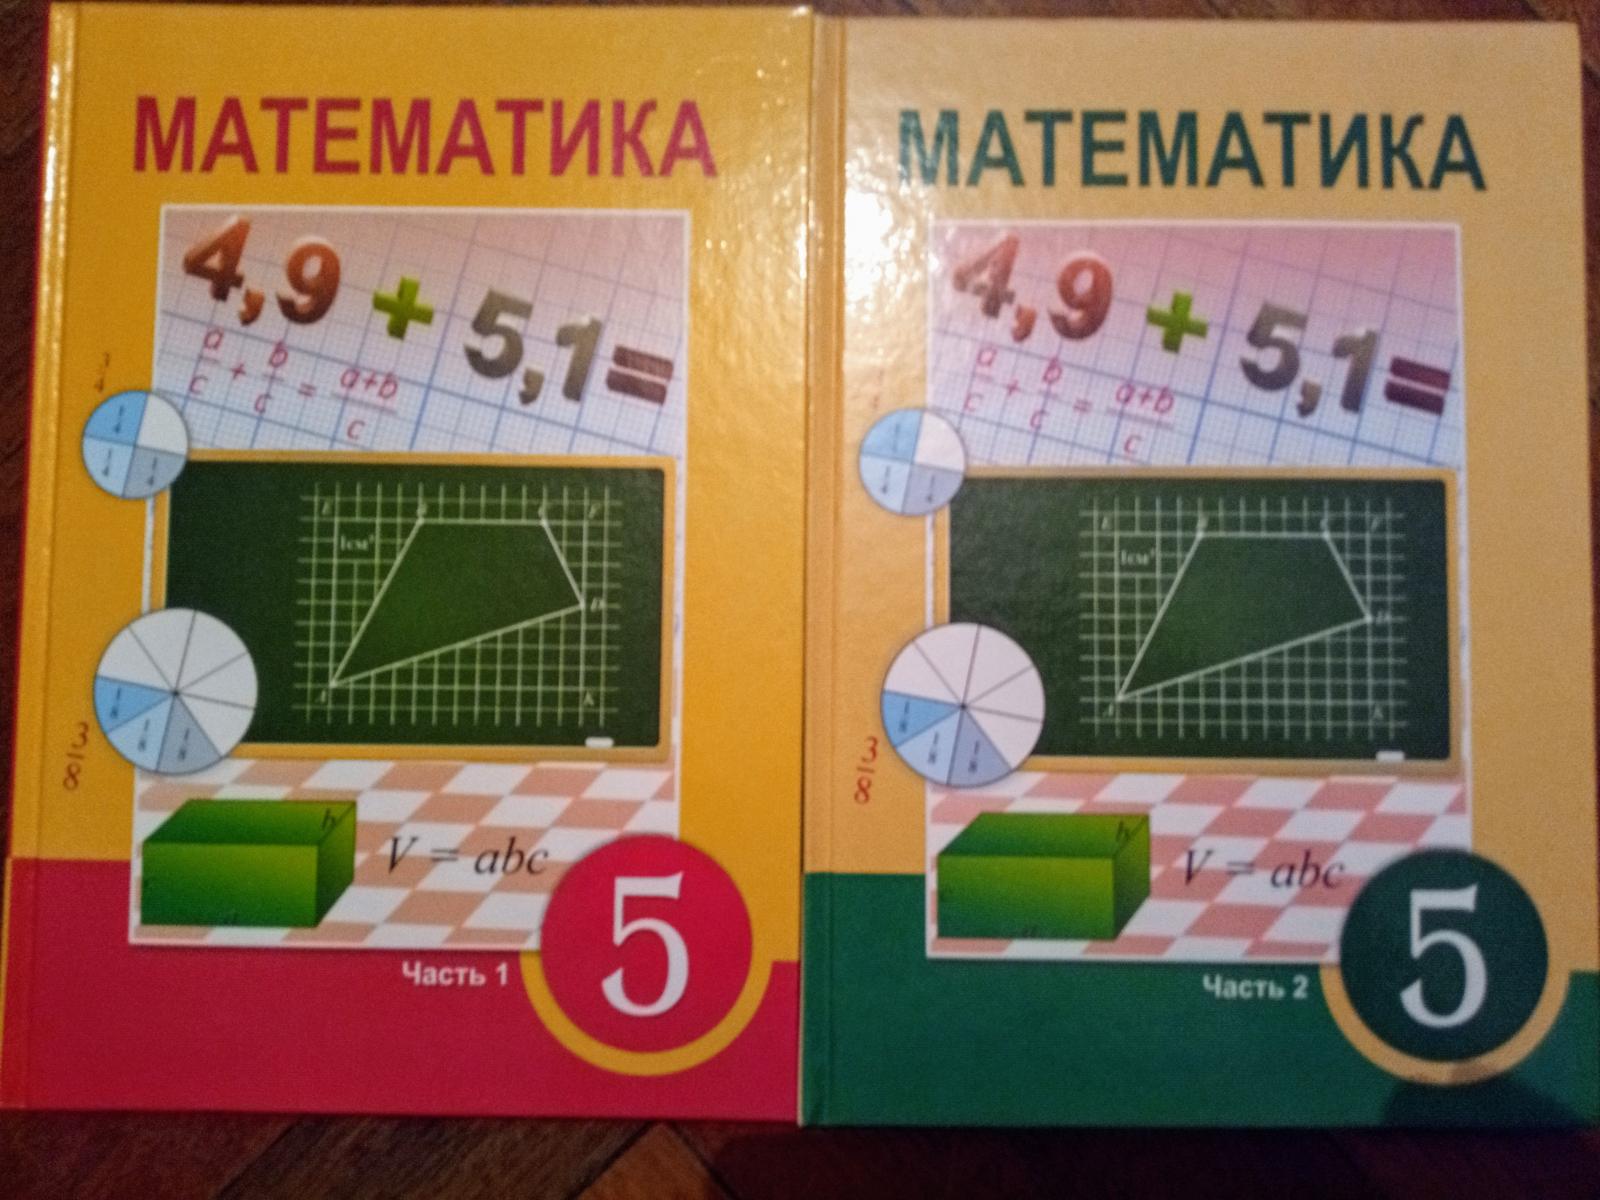 Матем 5 5.388. 2+Учебники+атамура. Матем 5 кл 2 часть 5.511. Математика 6 класс атамура 2006 год. Матем 5.510.